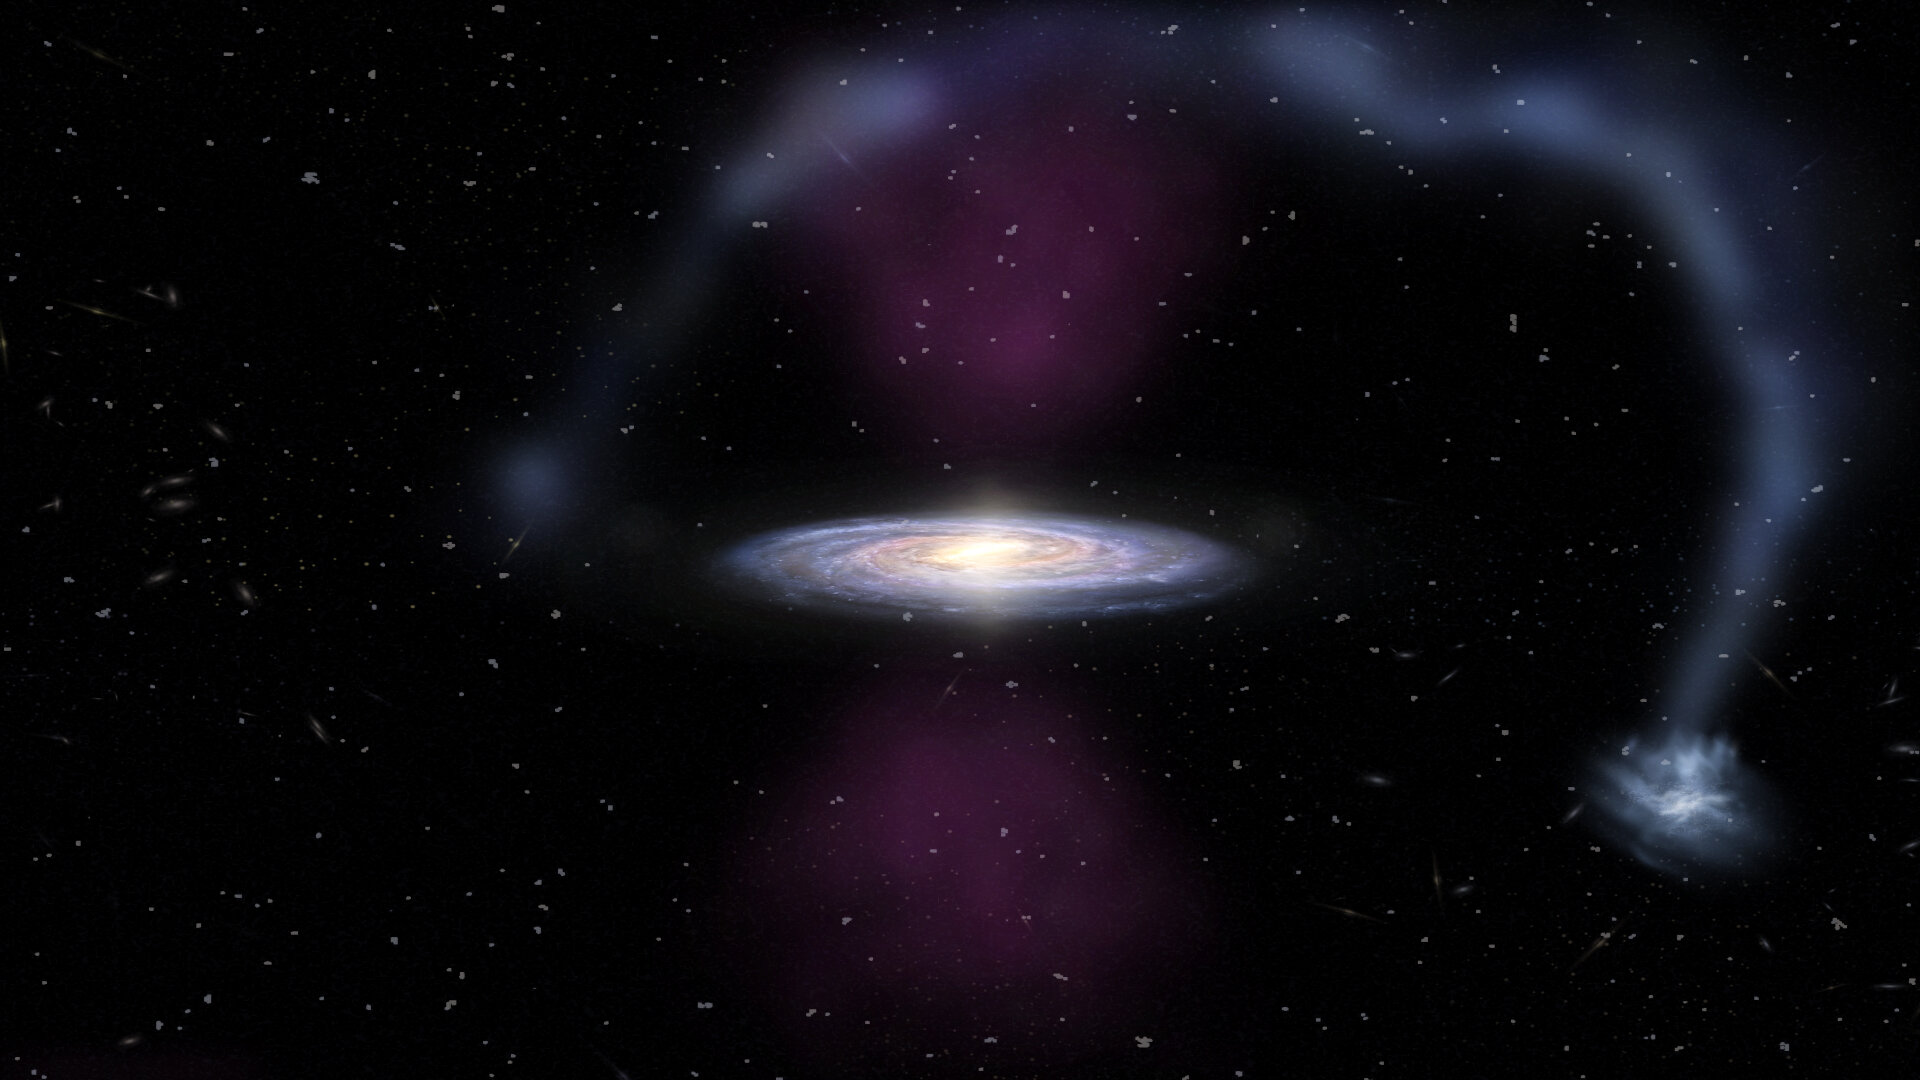 Δέος! Ανακαλύφθηκε κατακλυσμική έκρηξη στο κέντρο του γαλαξία μας!